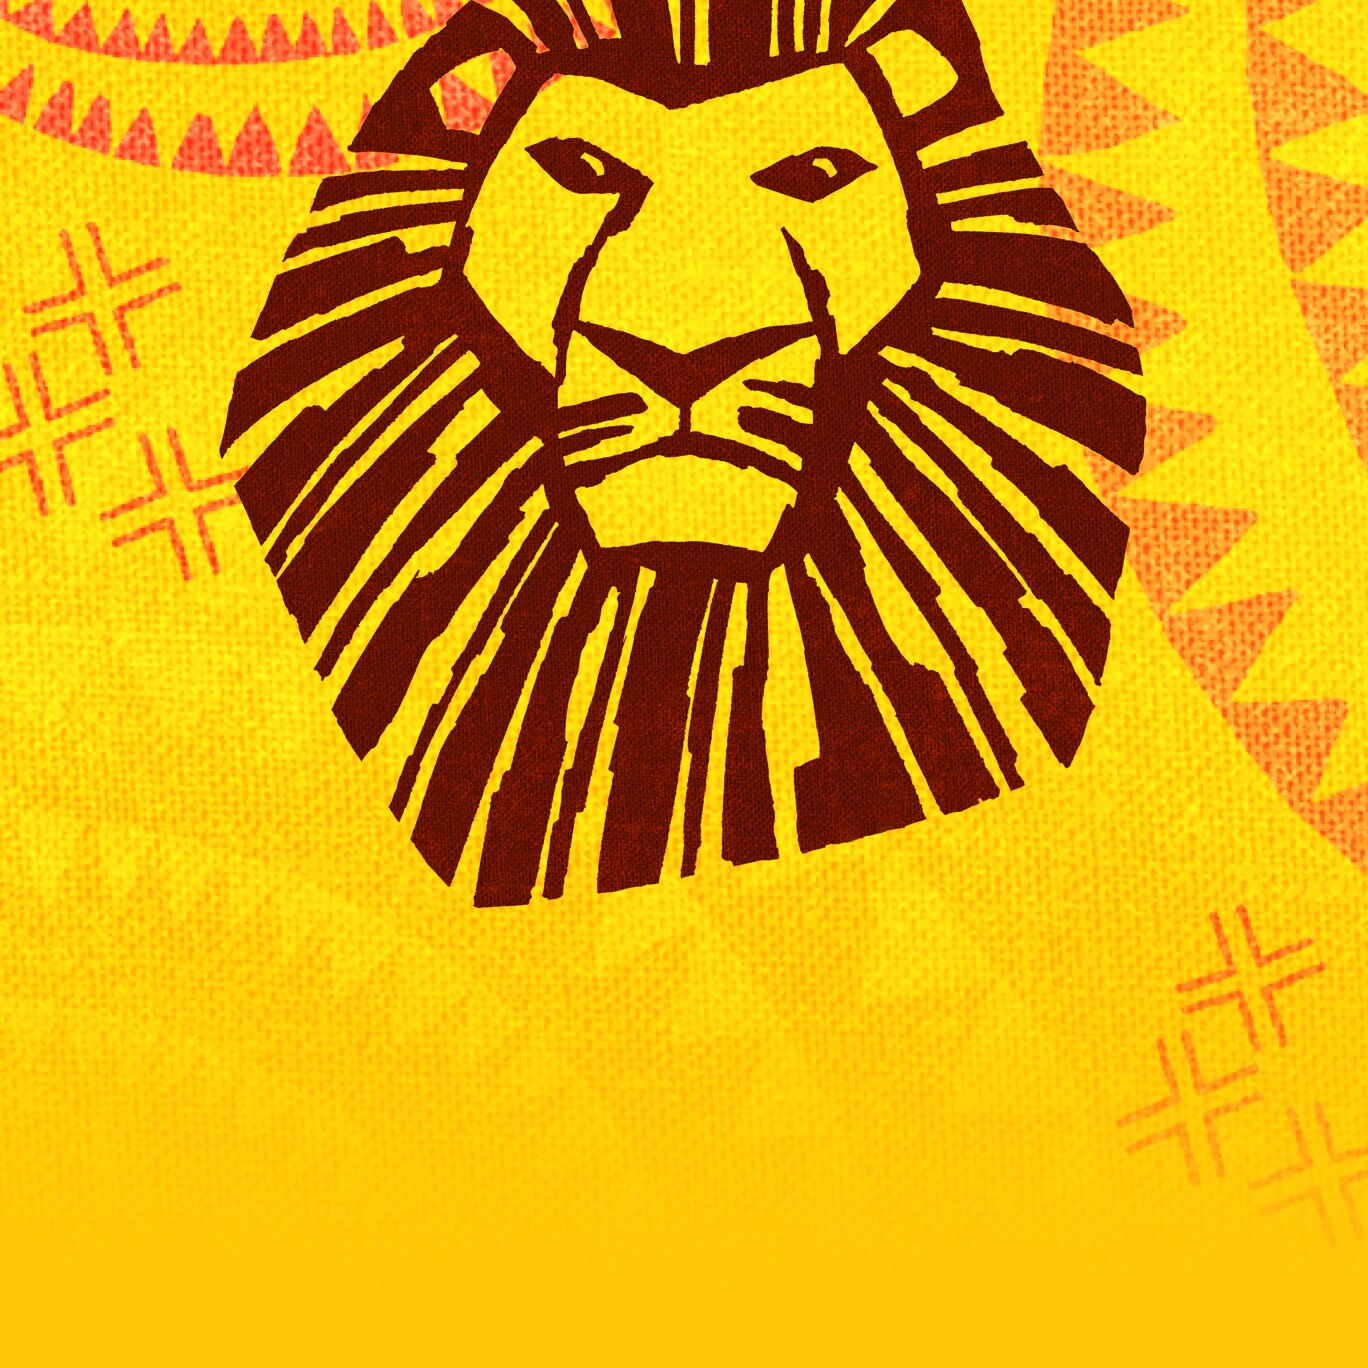 《狮子王》中的狮子头以黄色和橙色为背景